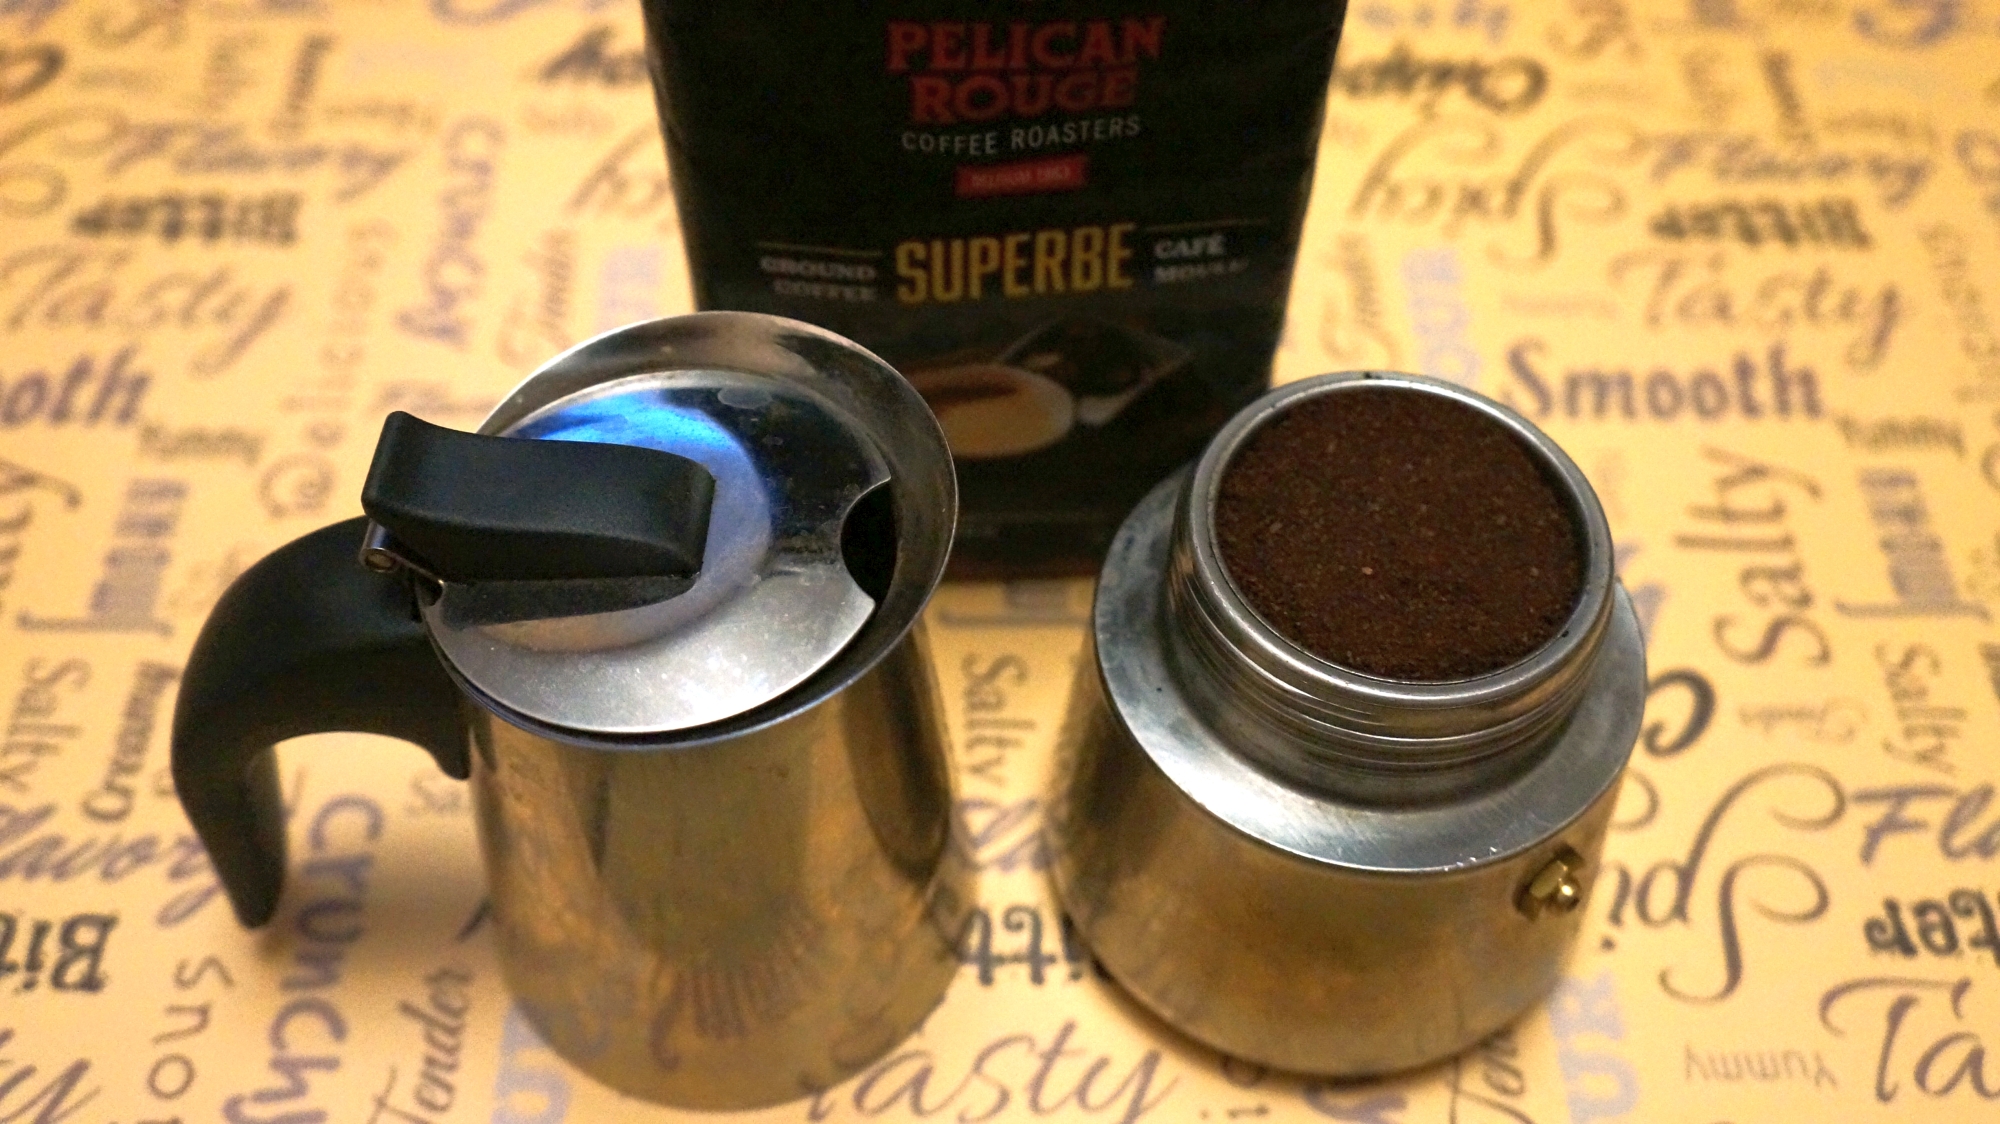 Кофе молотый Pelican Rouge Superbe в гейзерной кофеварке